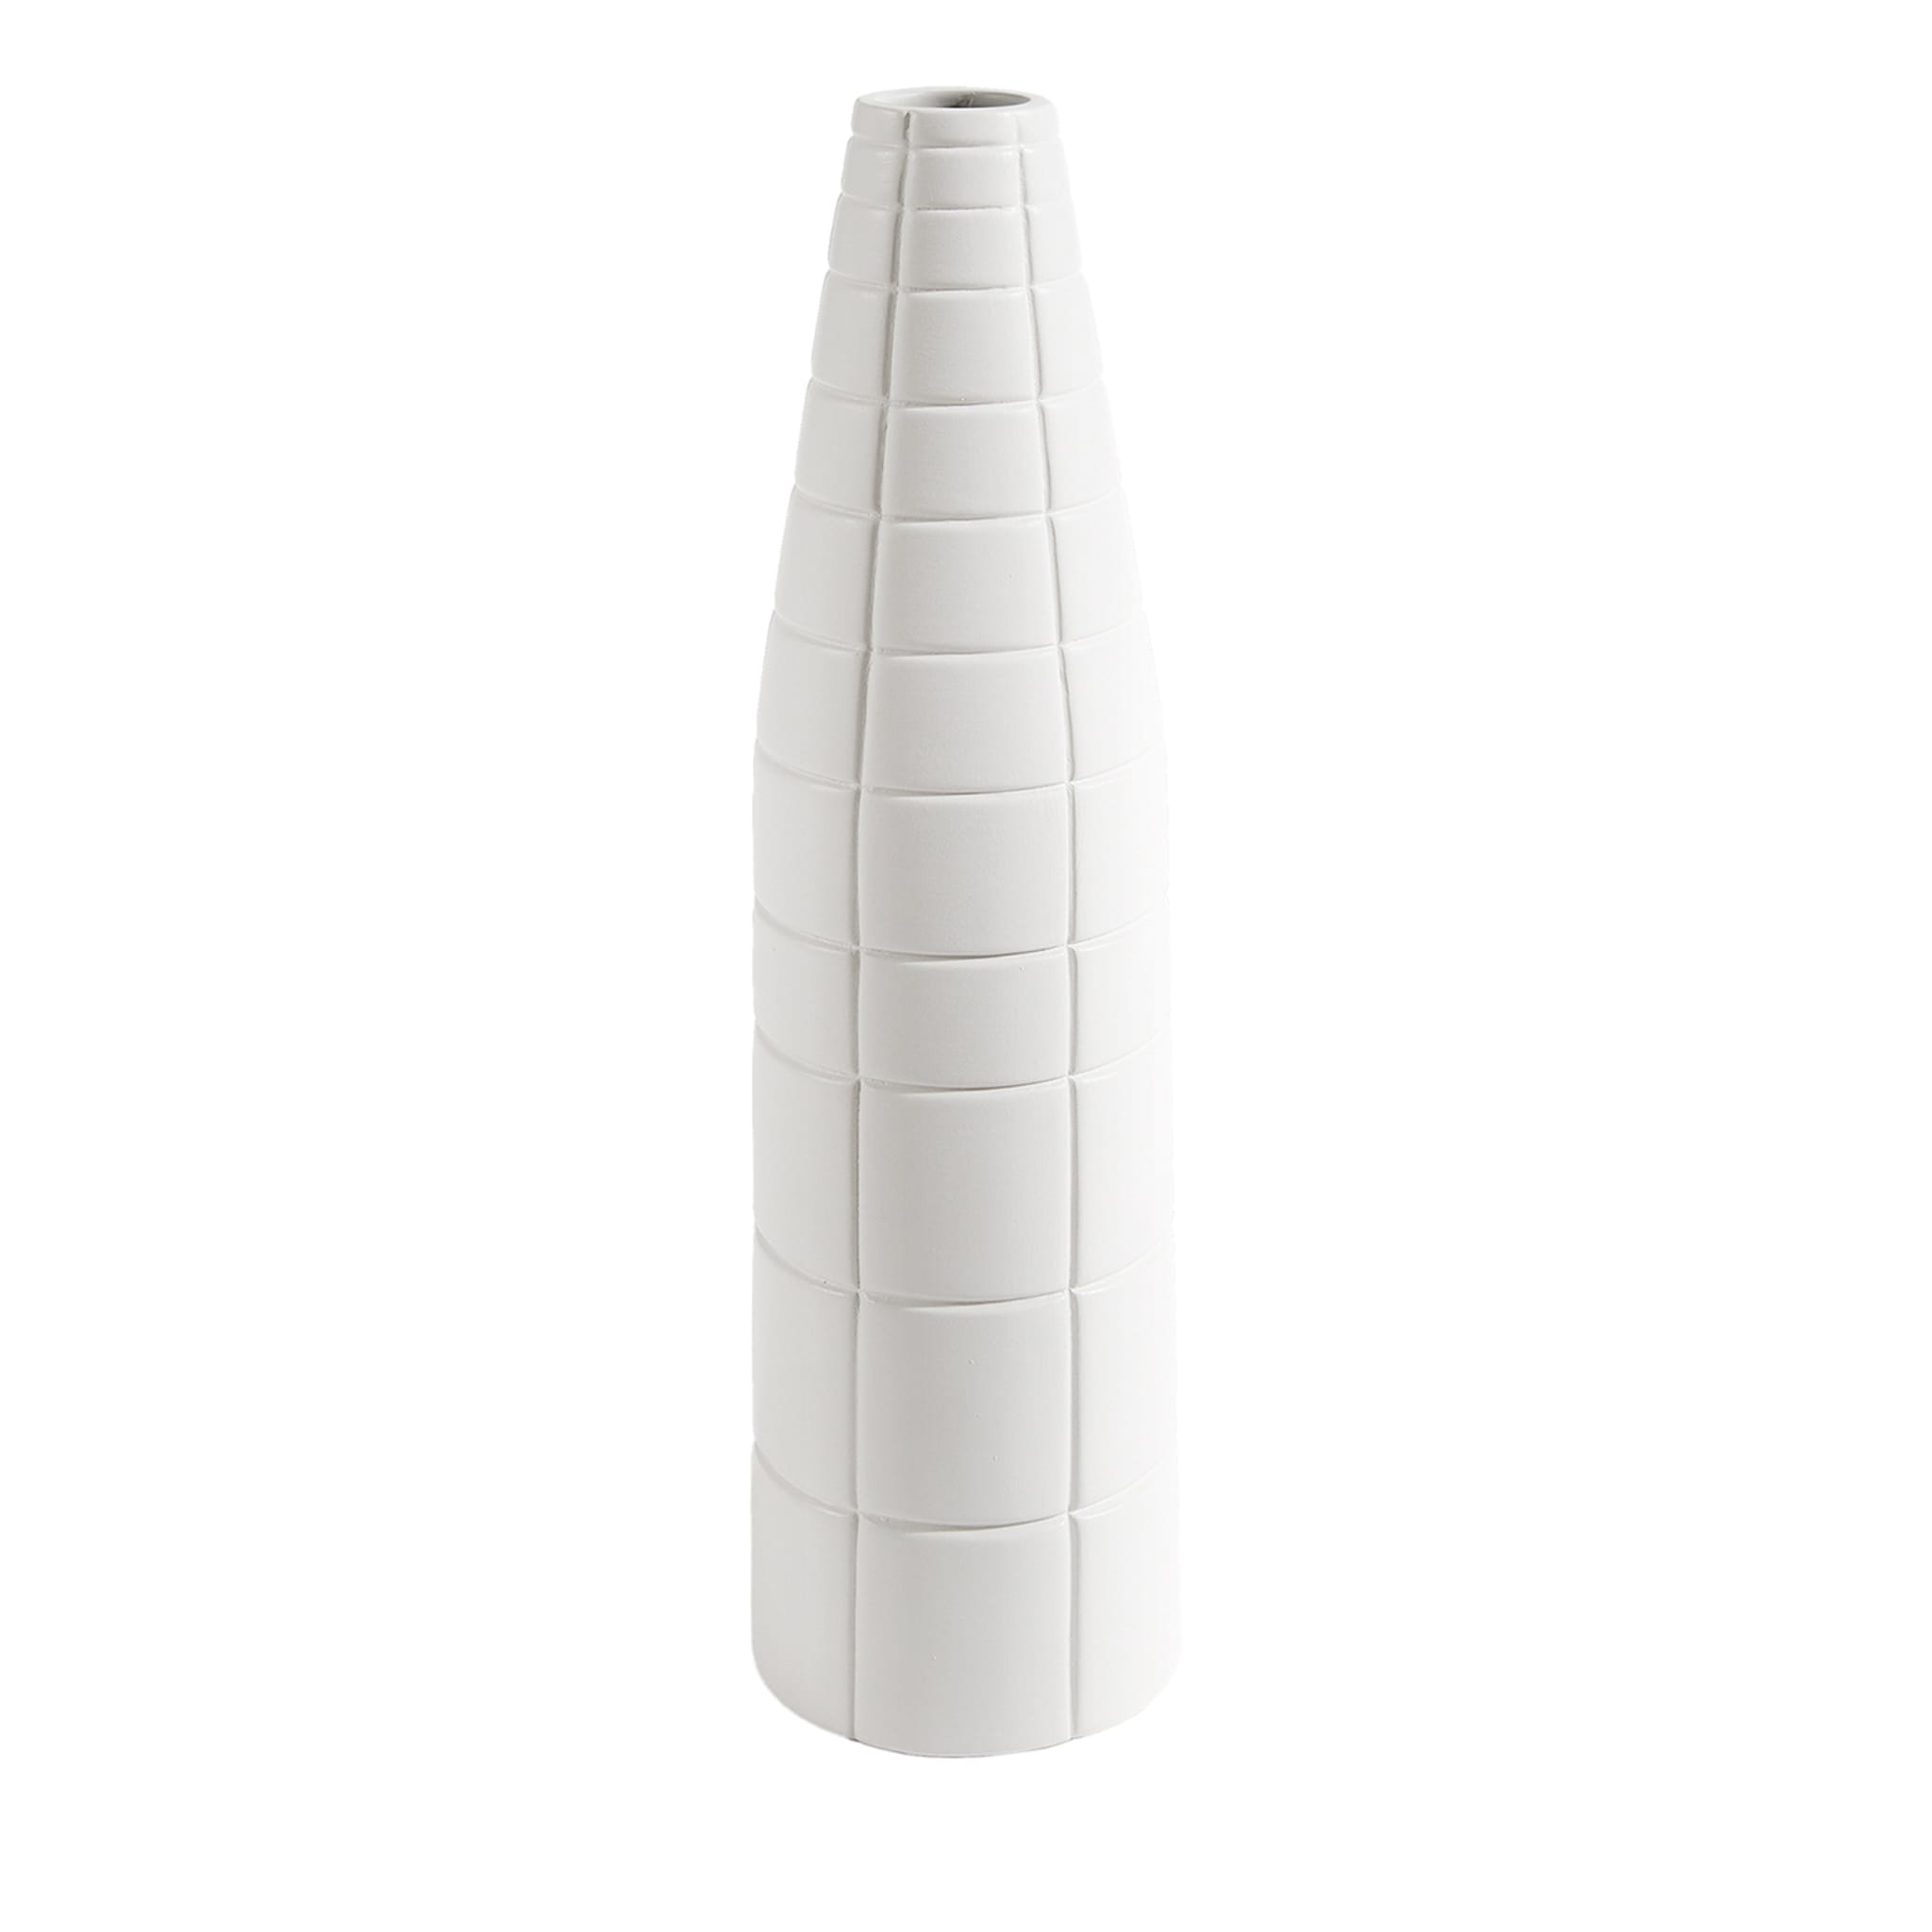 Rikuadra White Ceramic Vase #4 - Main view